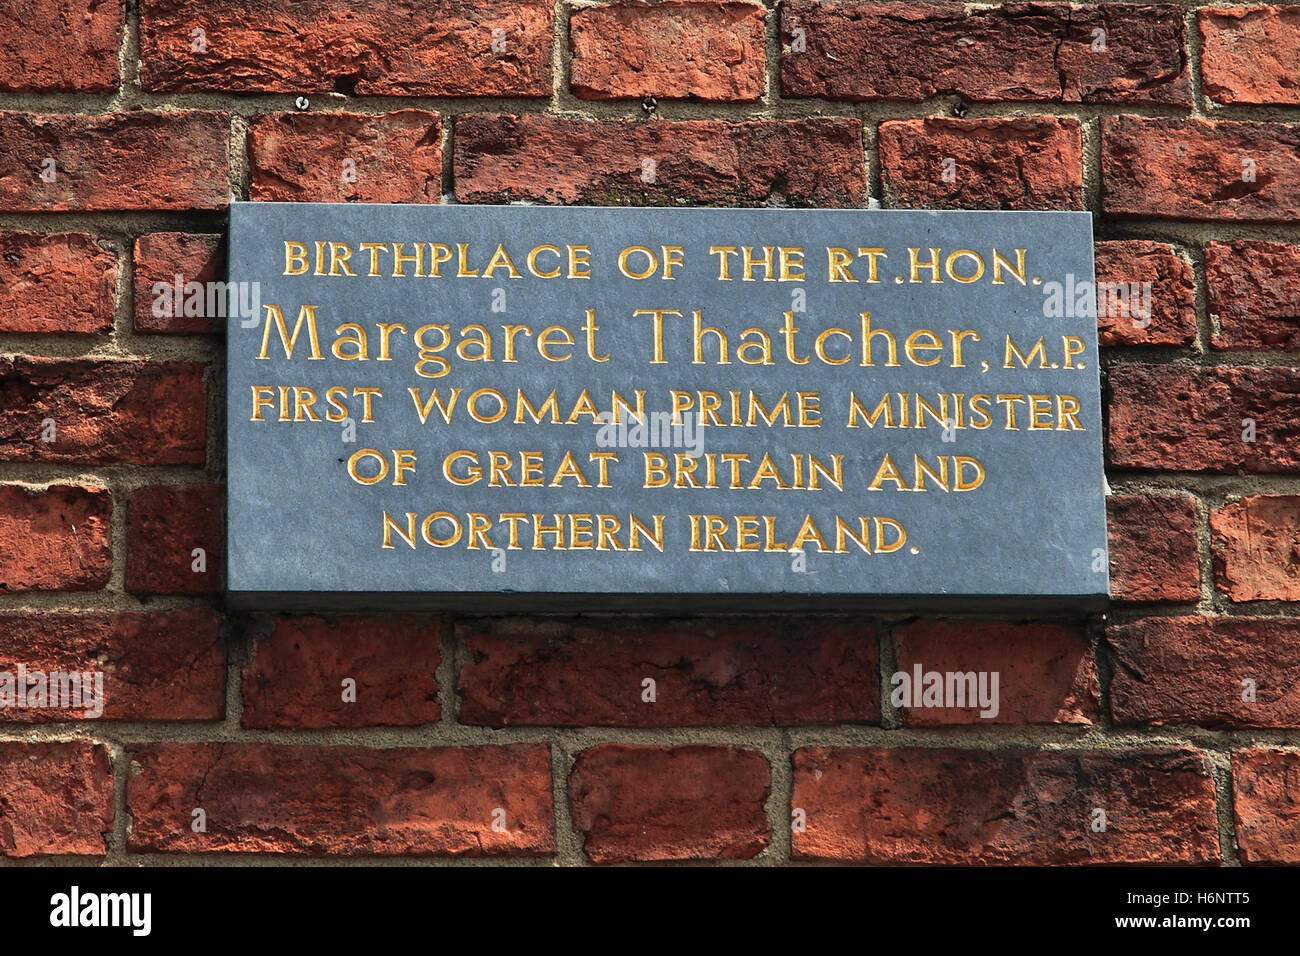 Plaque, die Kennzeichnung der Geburtsort des britischen Premierministers, Frau Margaret Thatcher, Grantham, Lincolnshire, England, Uk Stockfoto